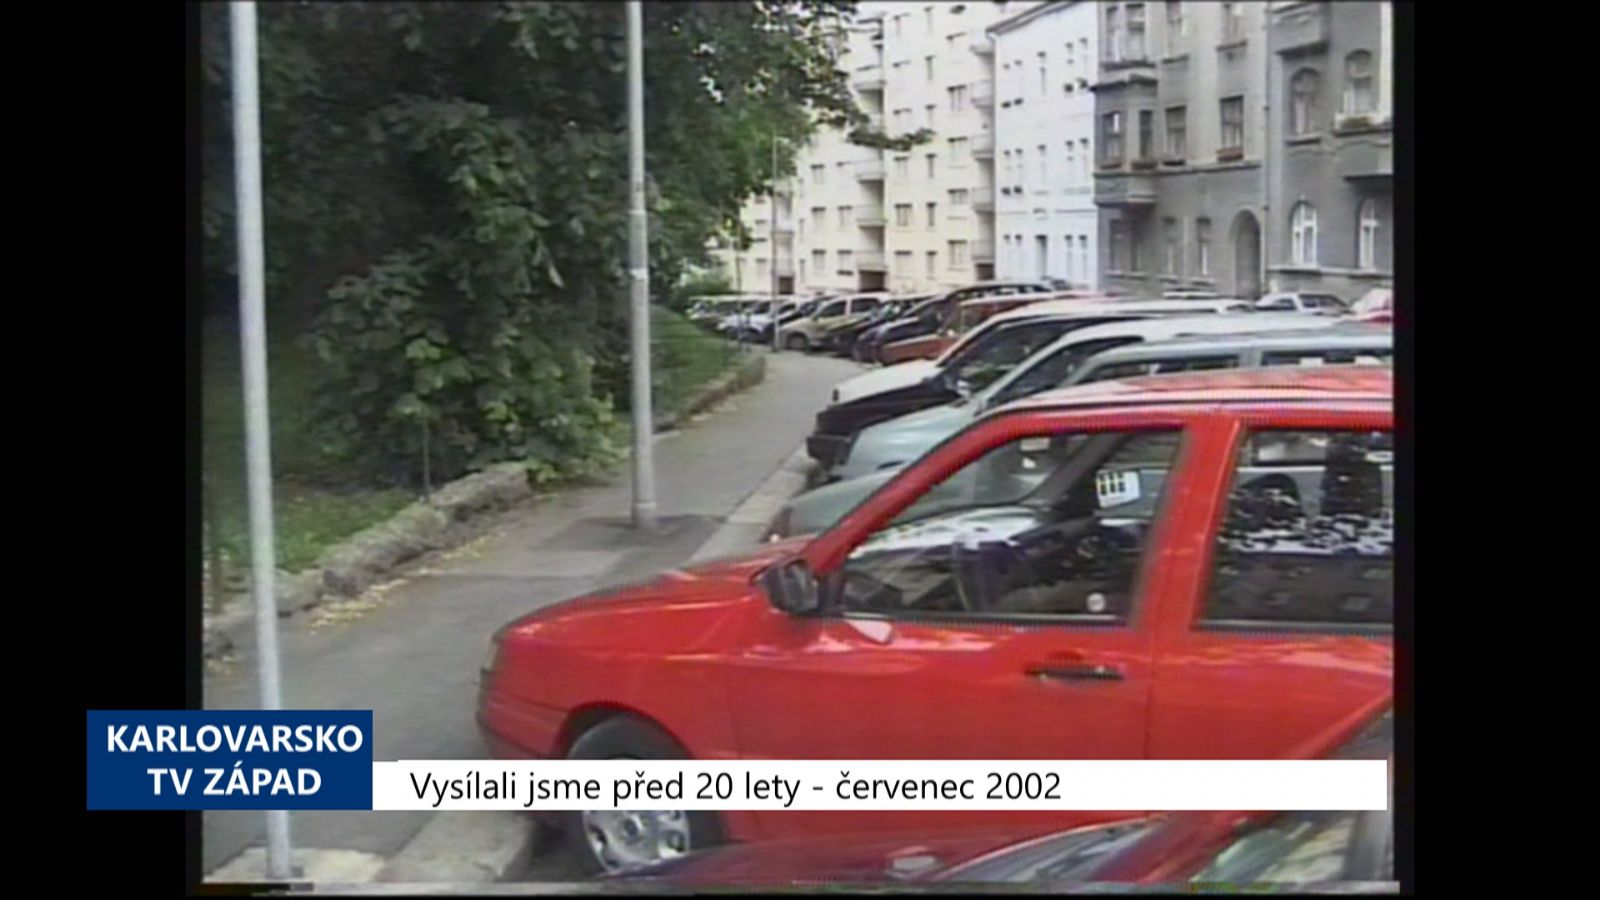 2002 – Cheb: Chystají se odtahy špatně parkujících vozidel (TV Západ)